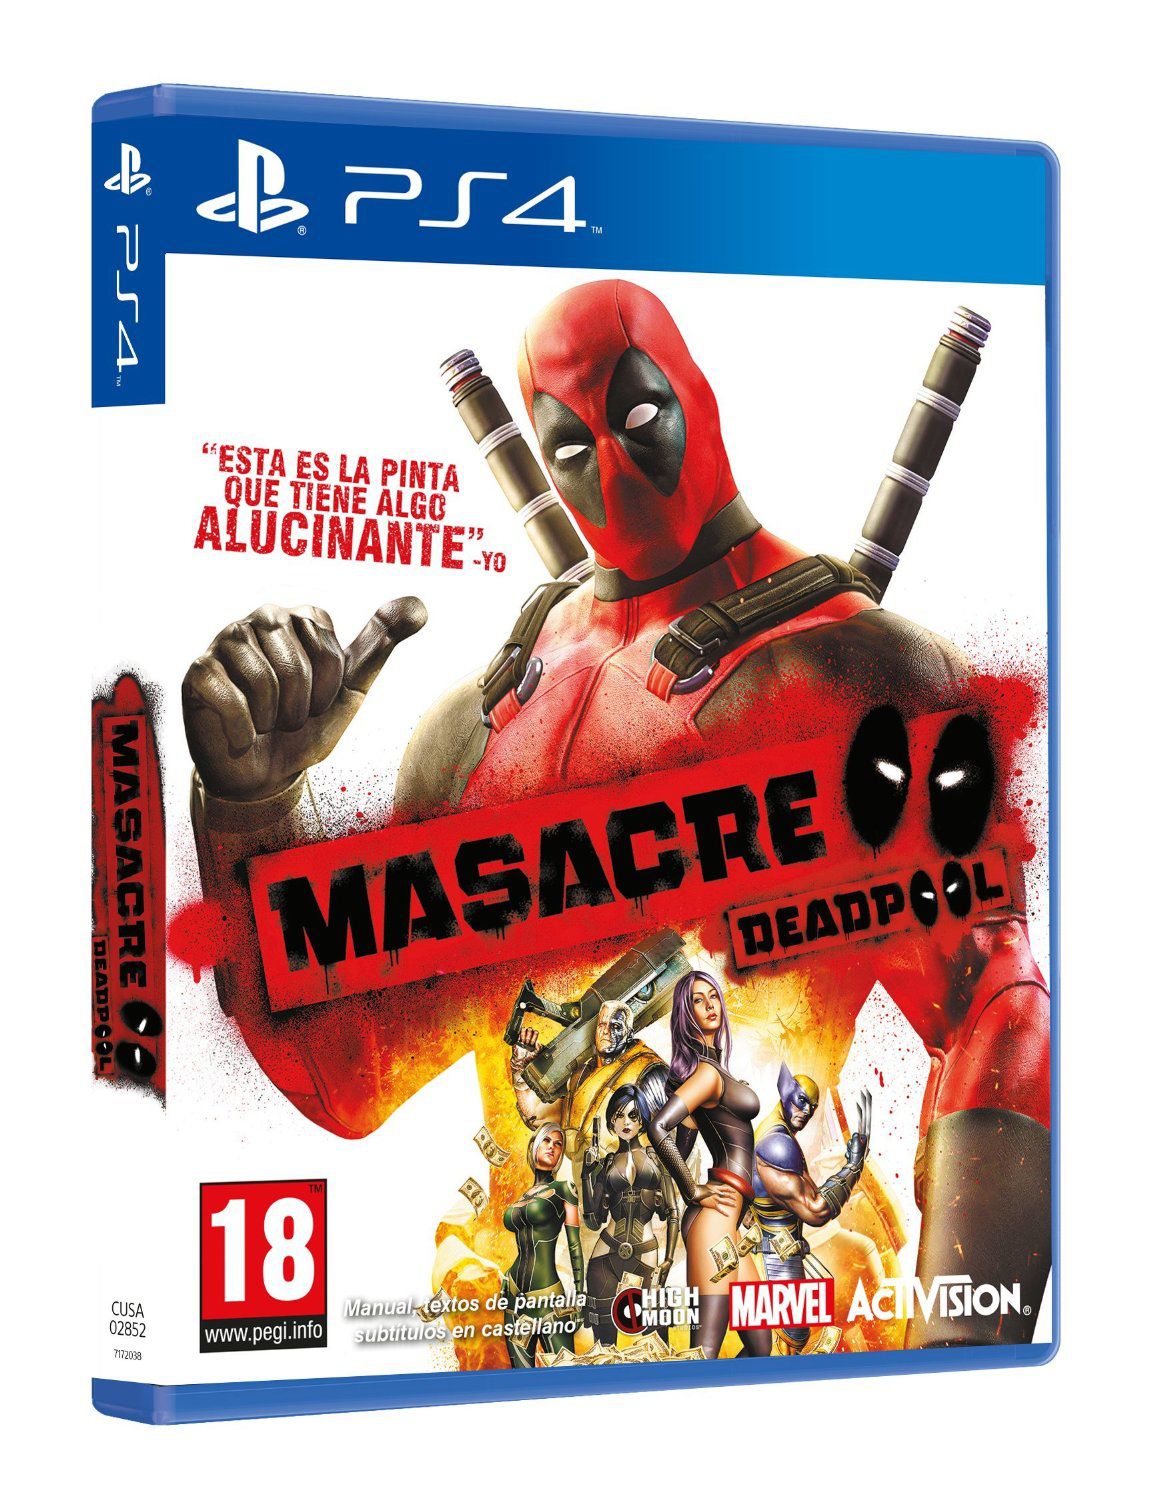 Masacre Deadpool Ps4